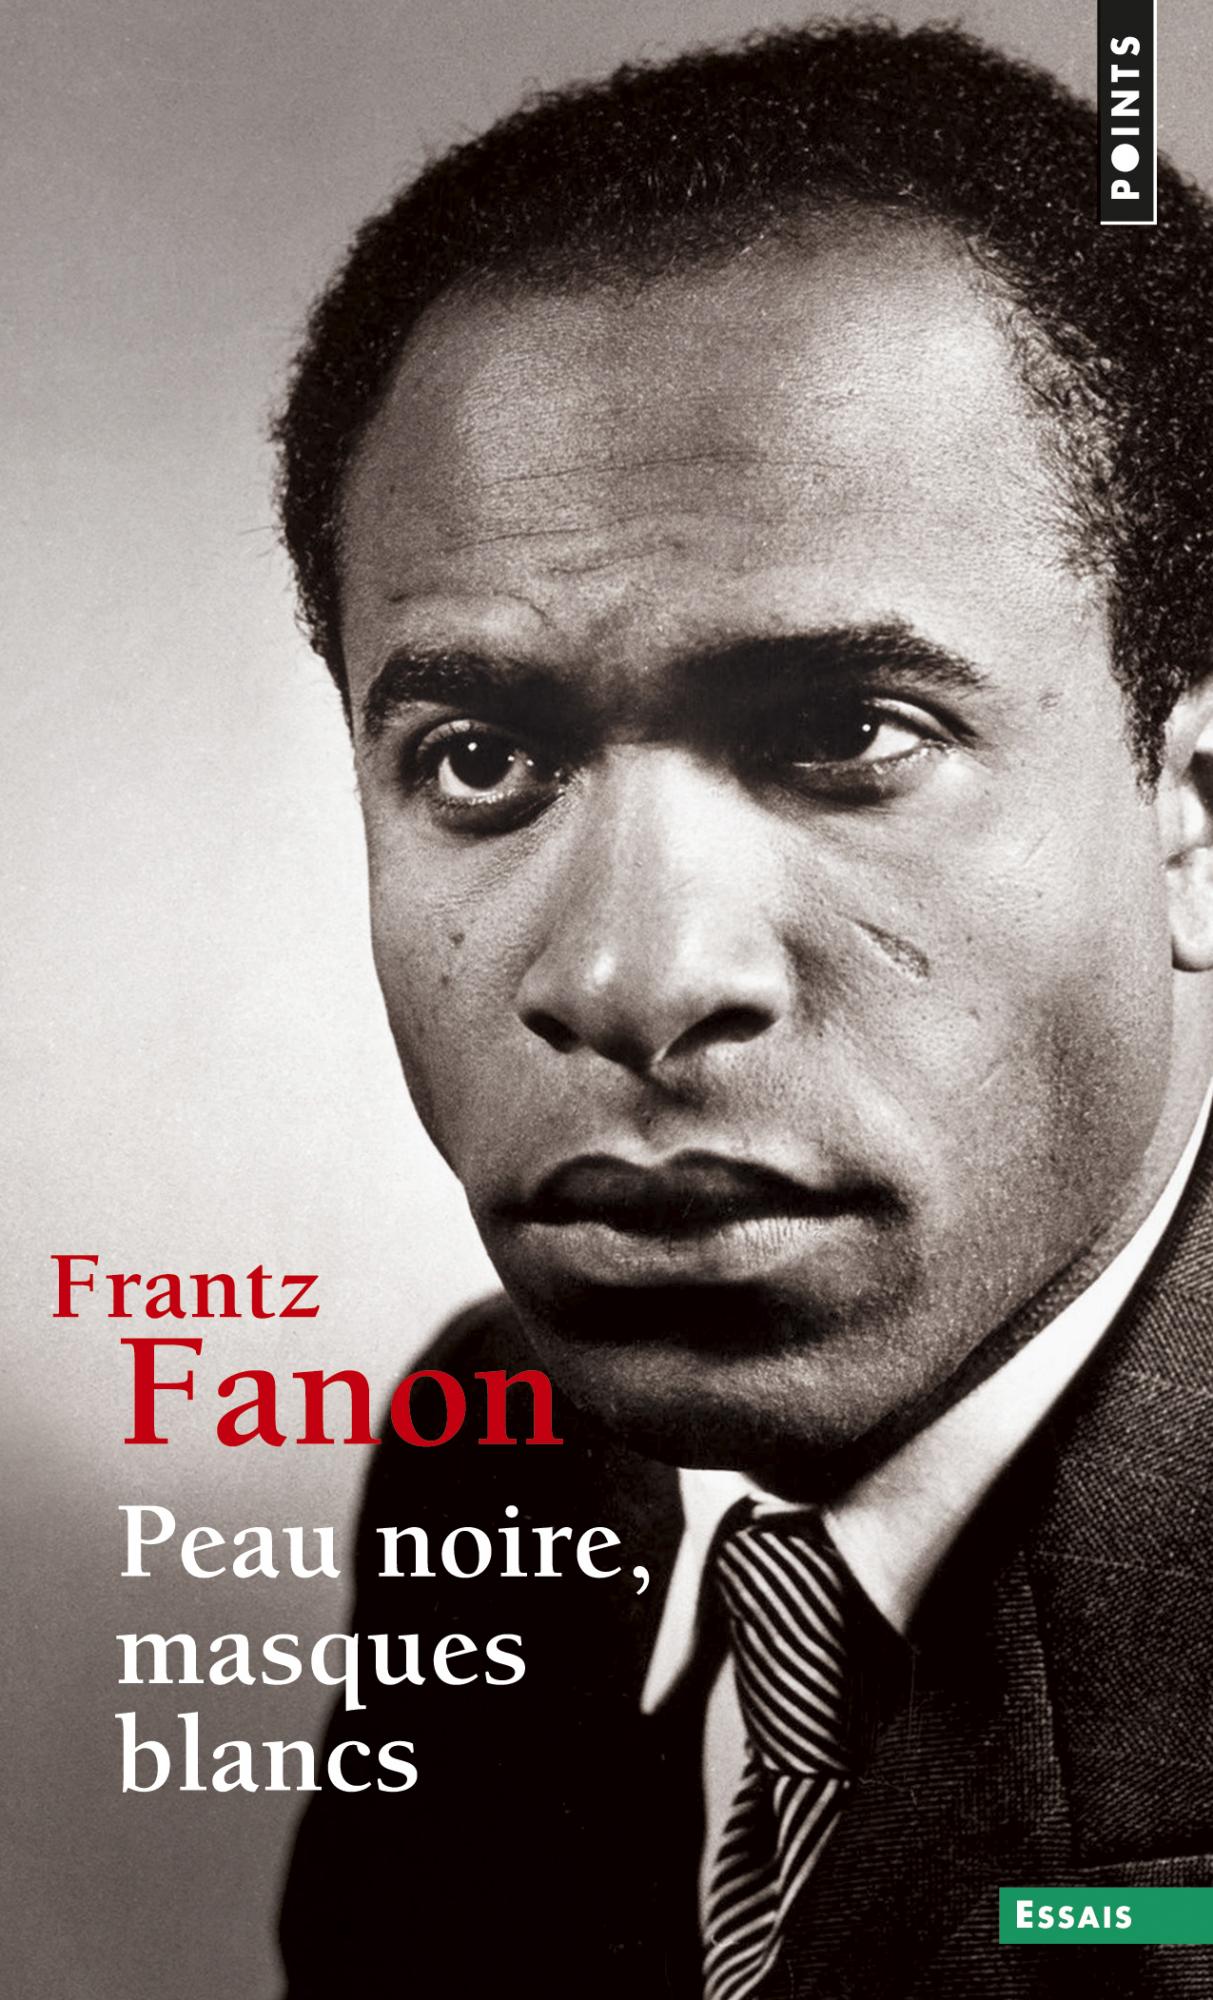 Frantz Fanon: Peau noire, masques blancs (Français language, 2015, Seuil)